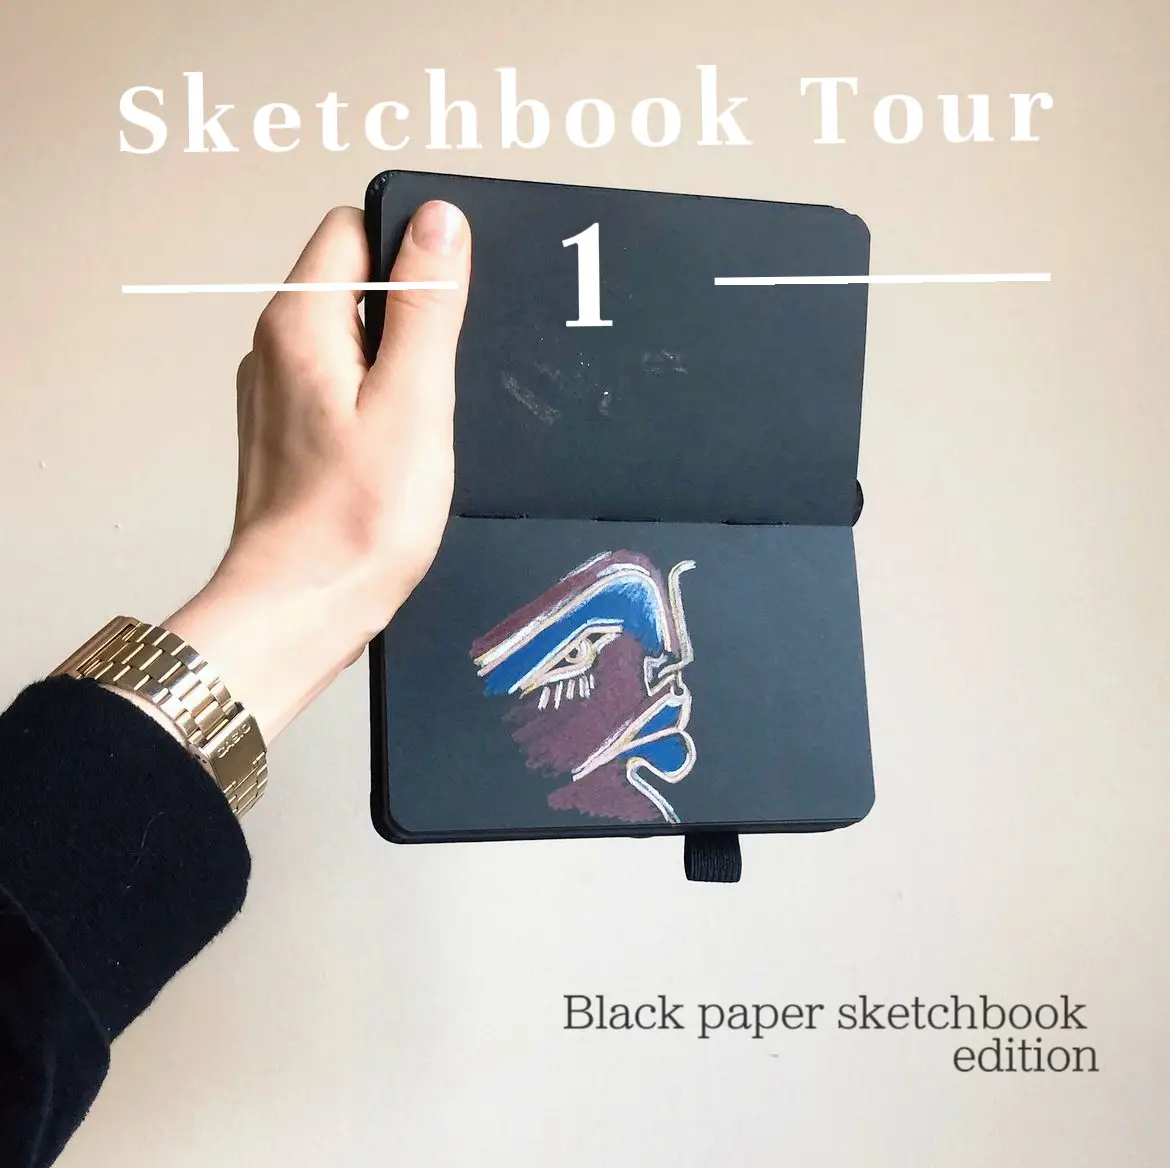 Sketchbook Tour, Black Paper Sketchbook, Gallery posted by JLC ART